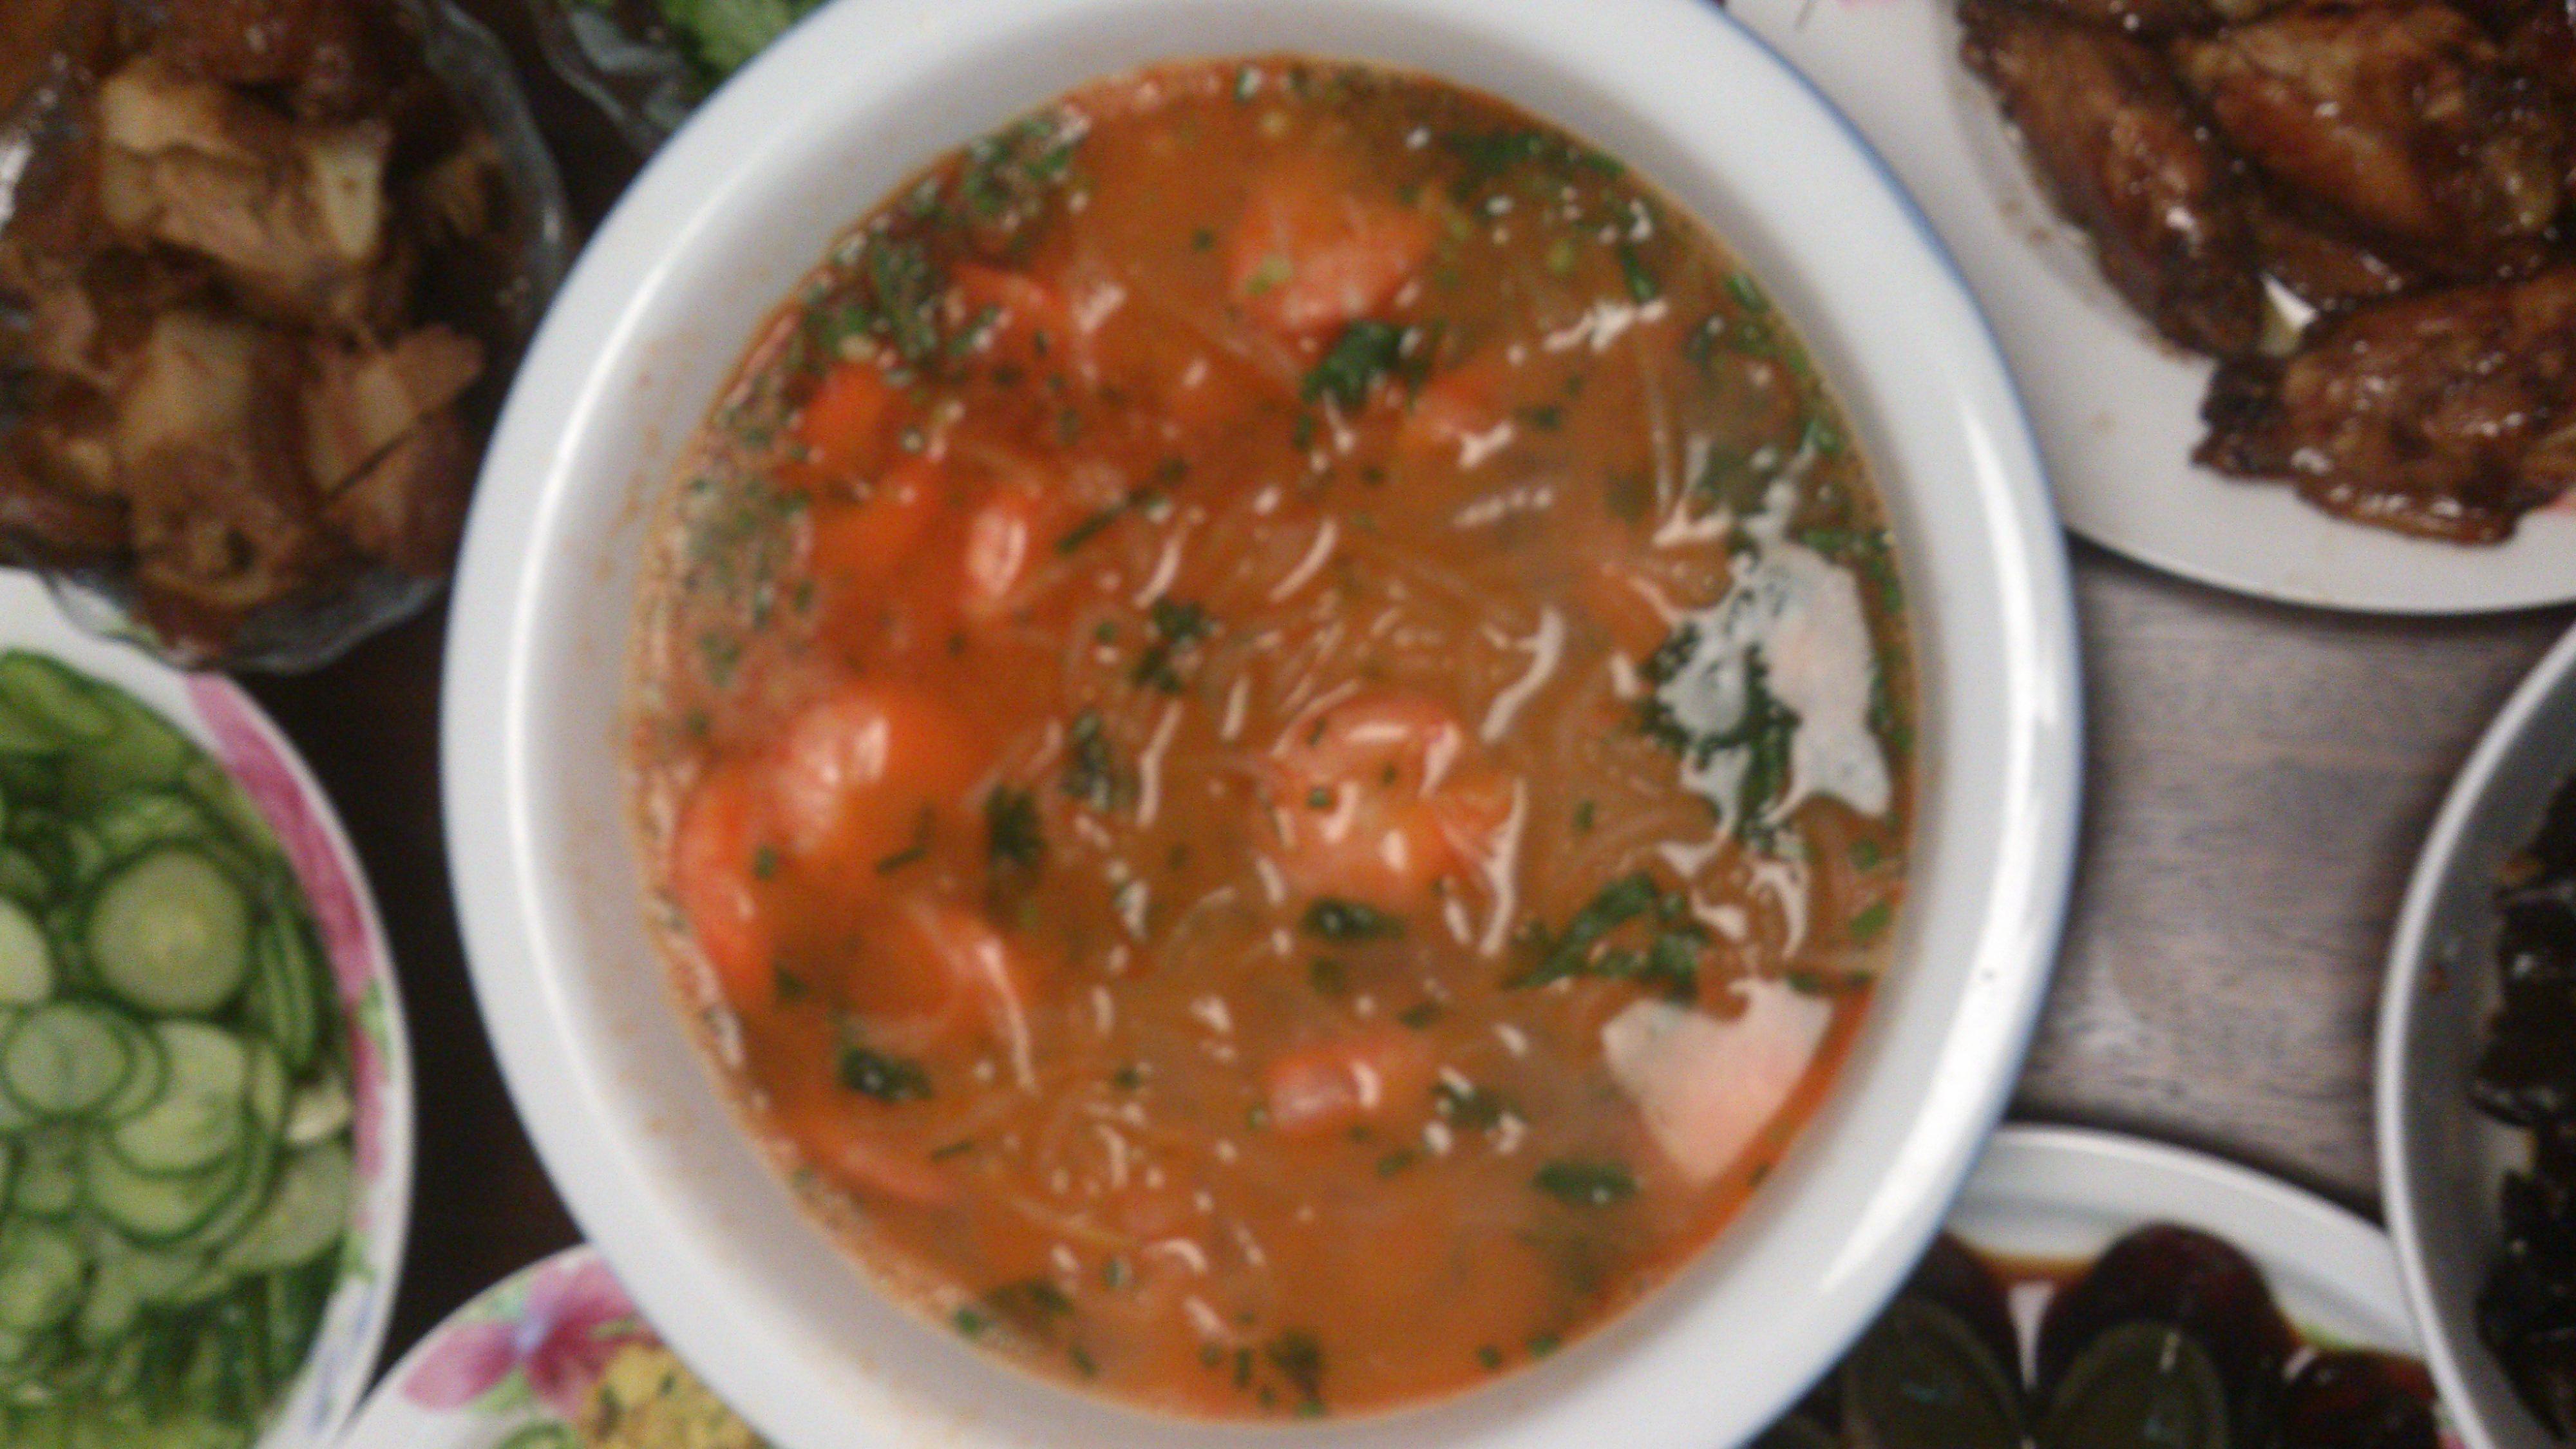 鲜虾萝卜丝汤的做法